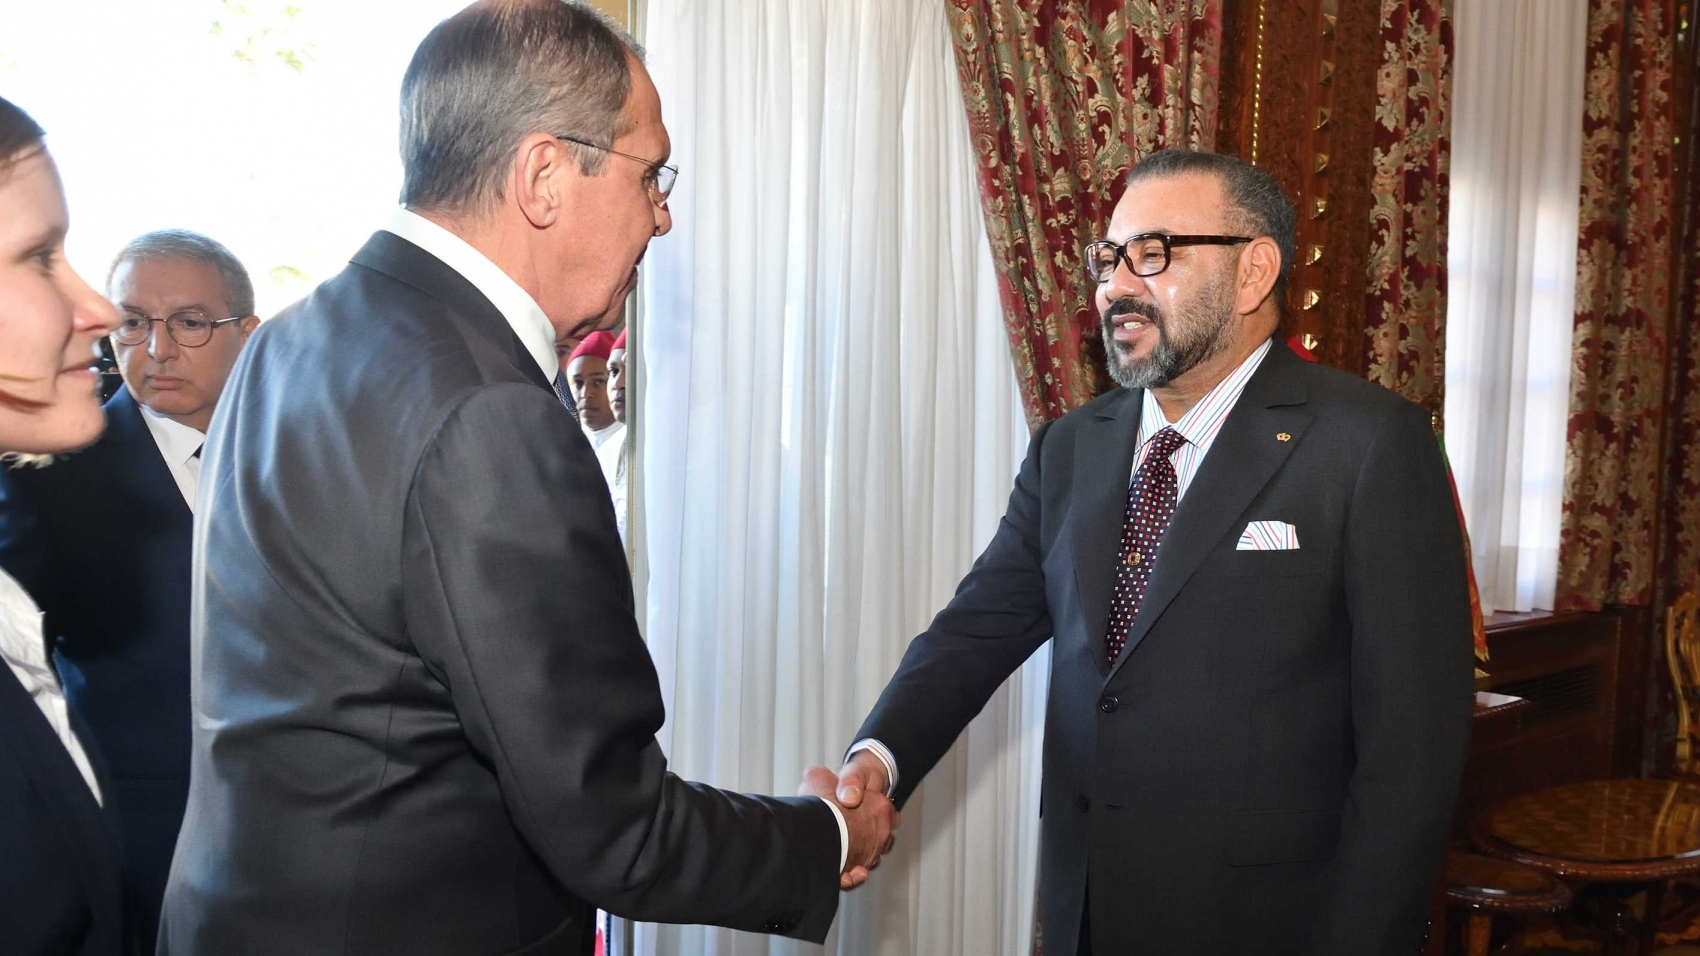 Le roi Mohammed VI recevant en audience le ministre des Affaires étrangères de la Fédération de Russie, Serguei Lavrov, vendredi 25 janvier.
